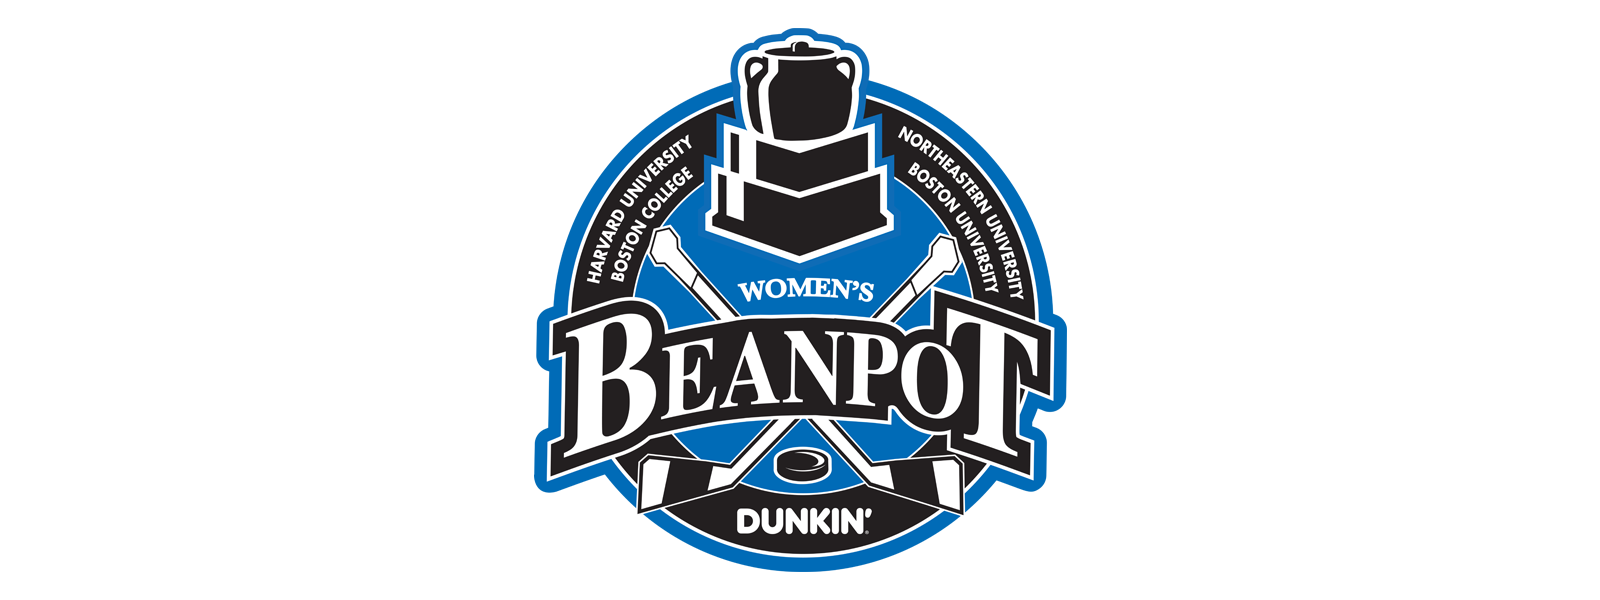 TD Garden to Host 45th Women's Beanpot Championship, Sports